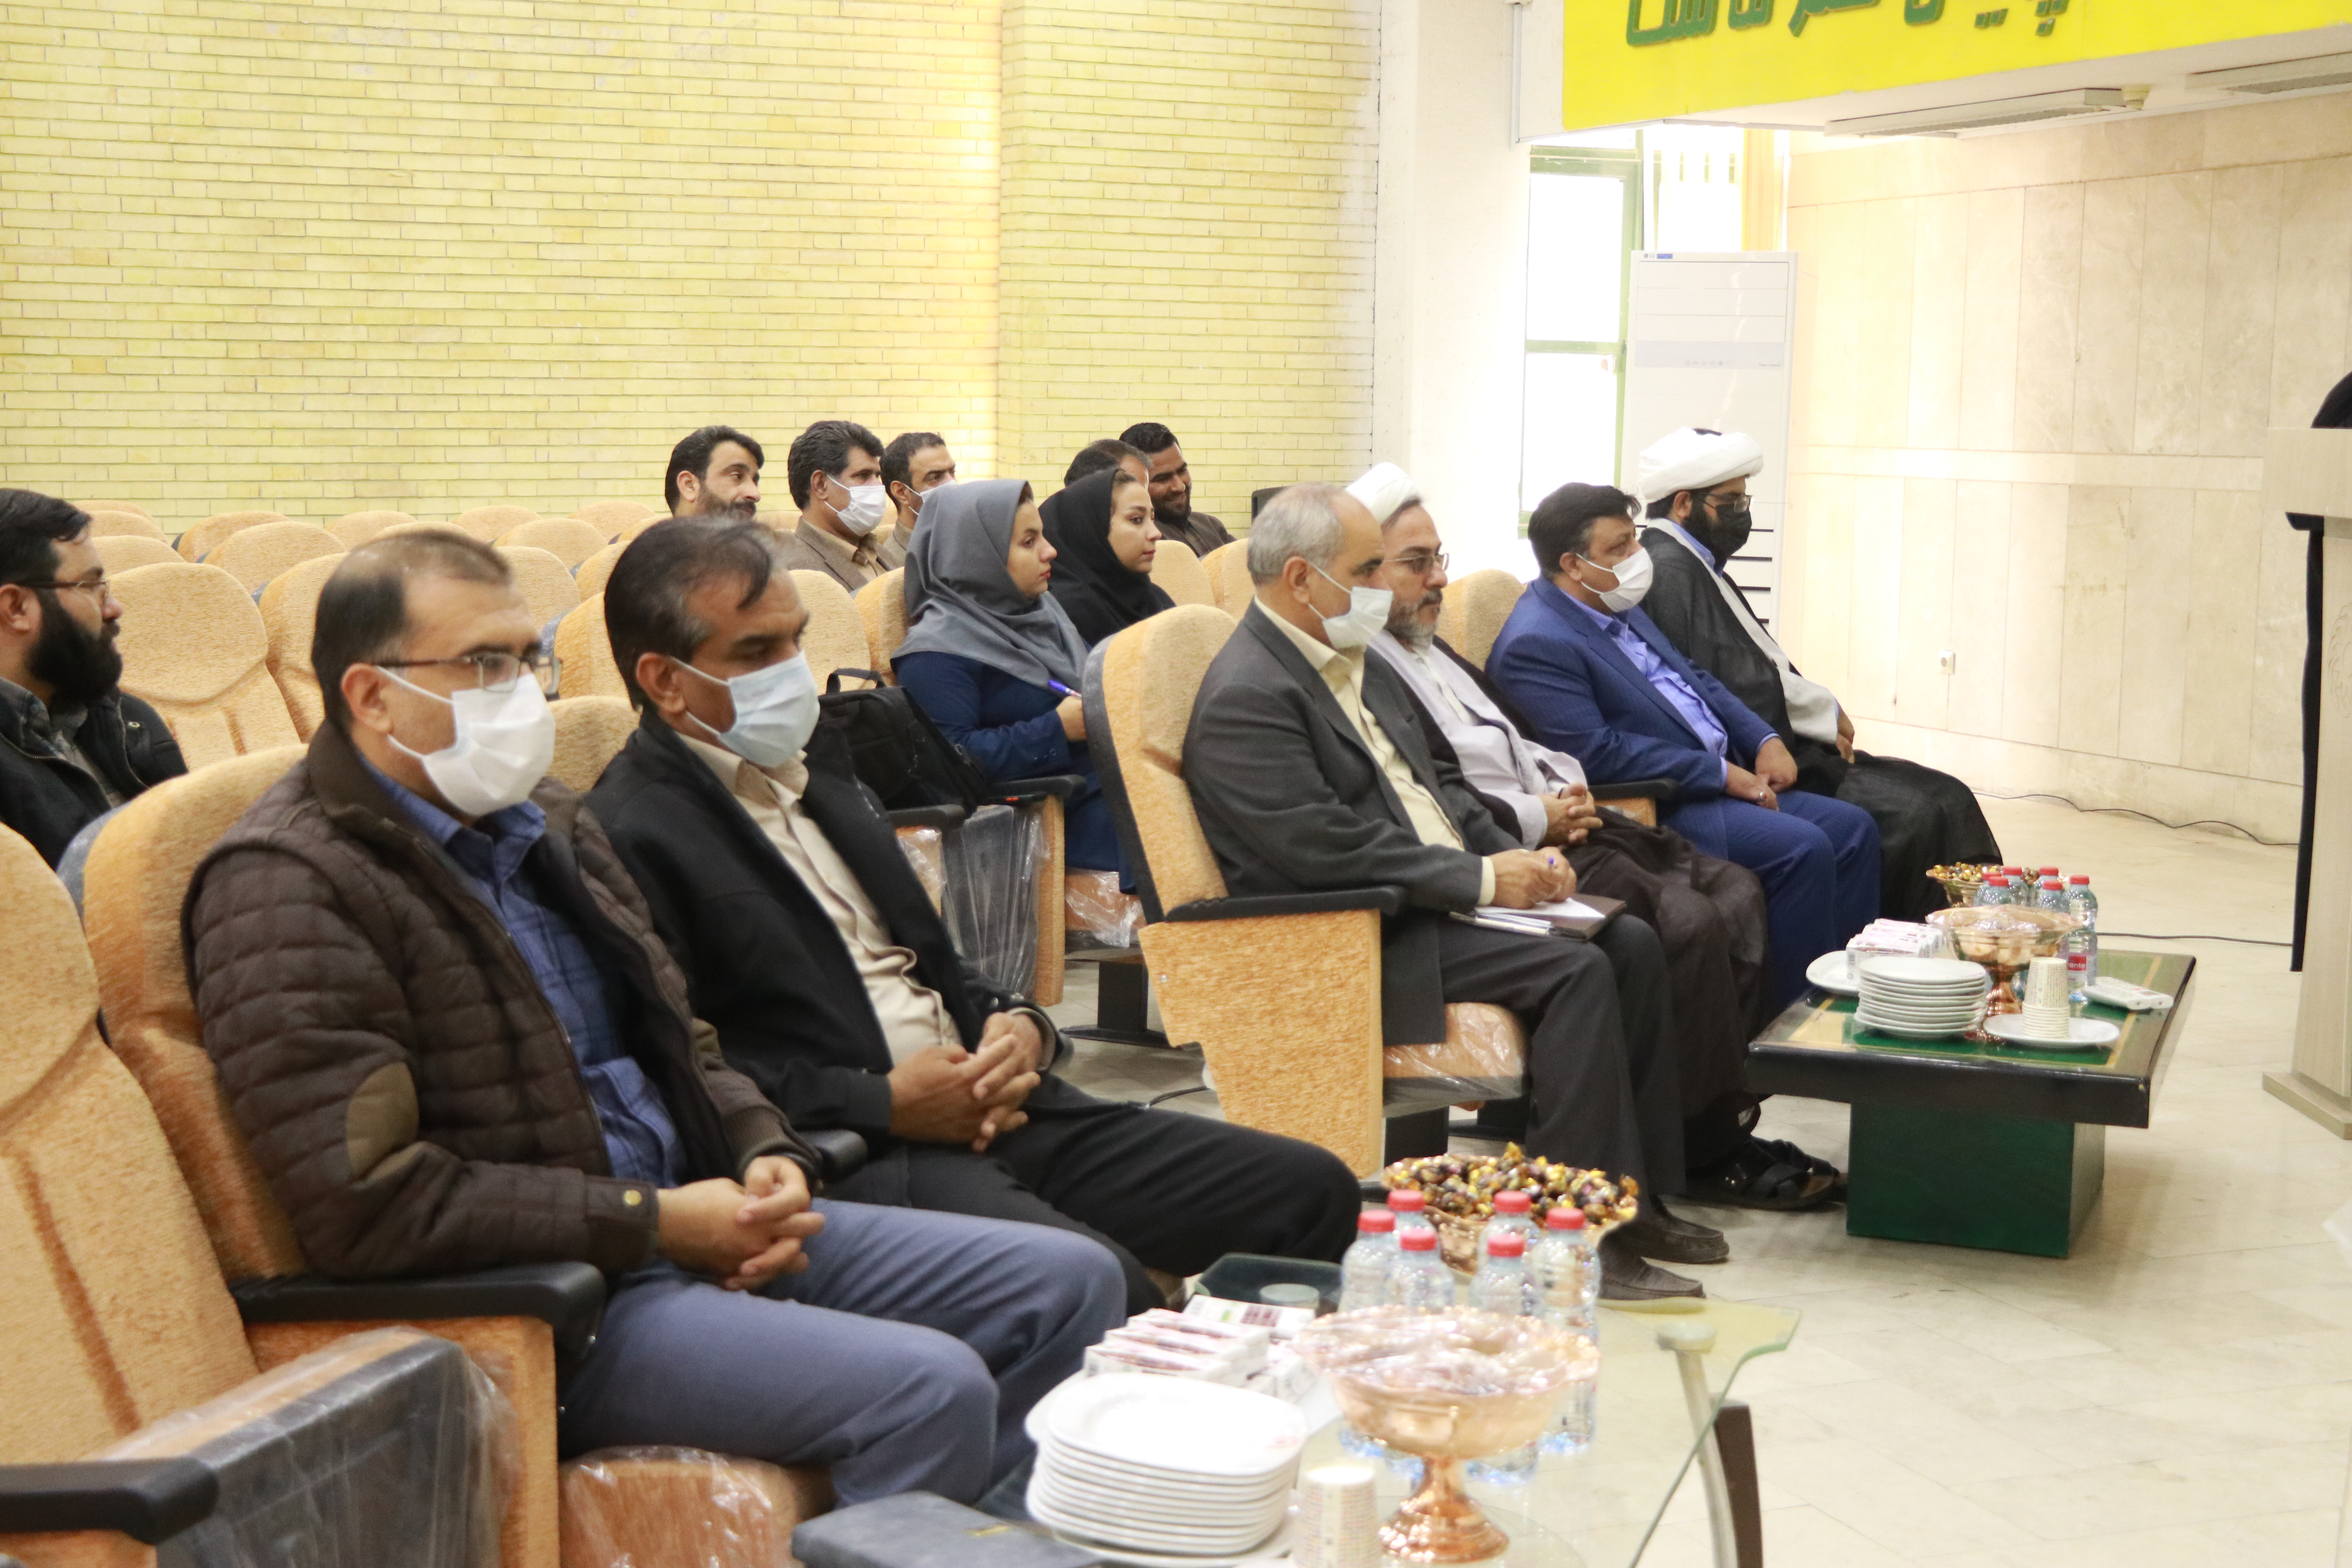 نامگذاری تالار اجتماعات ساختمان شماره ۲ بهزیستی استان کرمان بنام شهید مهدی زاهد لوئی